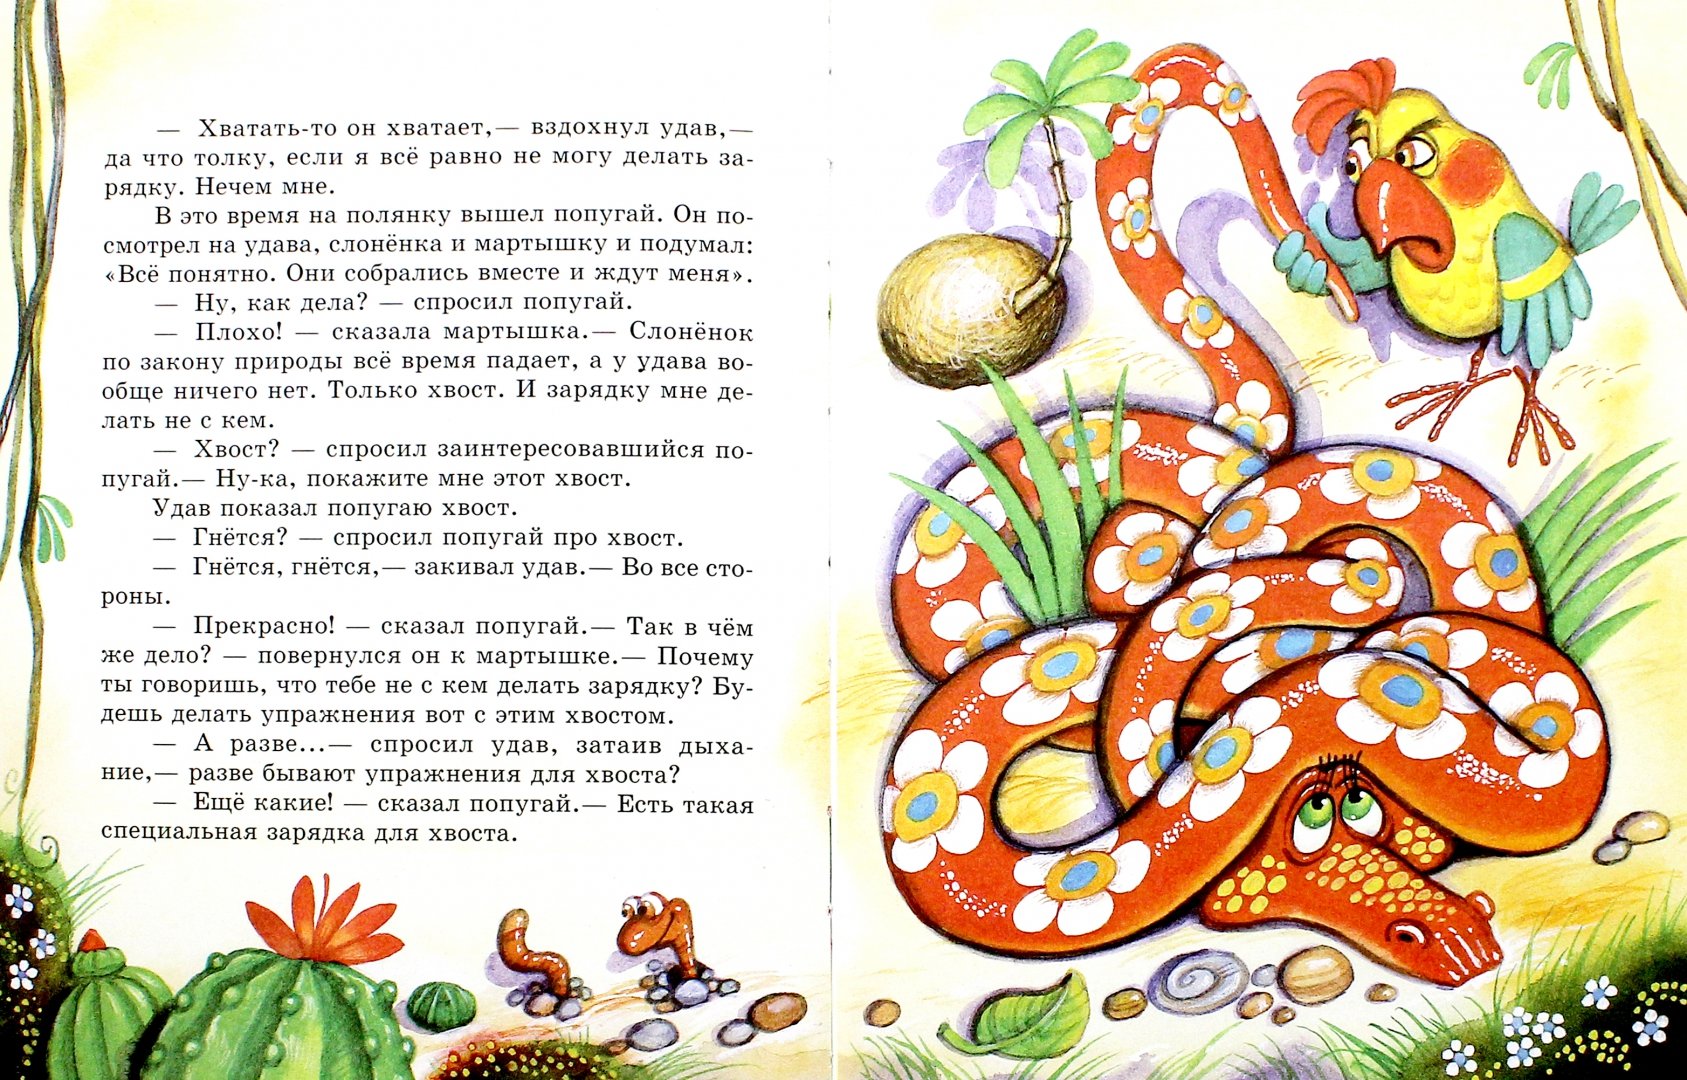 Иллюстрация 5 из 6 для Библиотечка лучших сказок для детей - Успенский, Остер, Коваль | Лабиринт - книги. Источник: Лабиринт